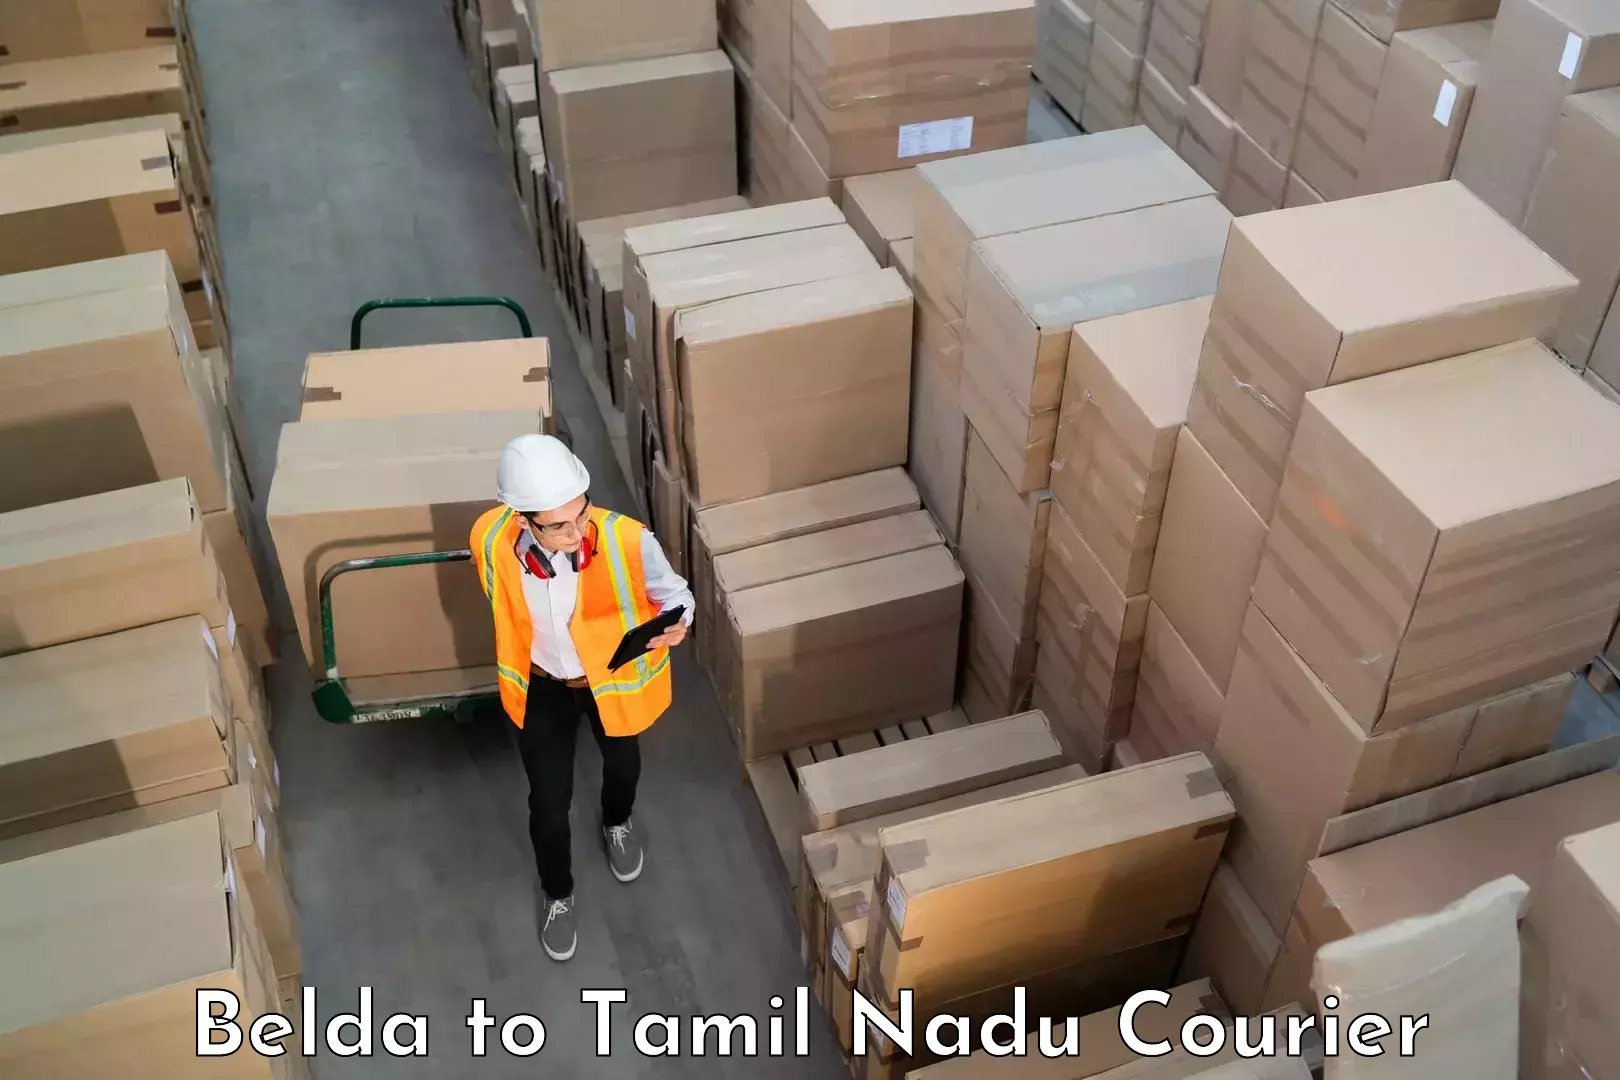 Luggage shipment specialists Belda to Tamil Nadu